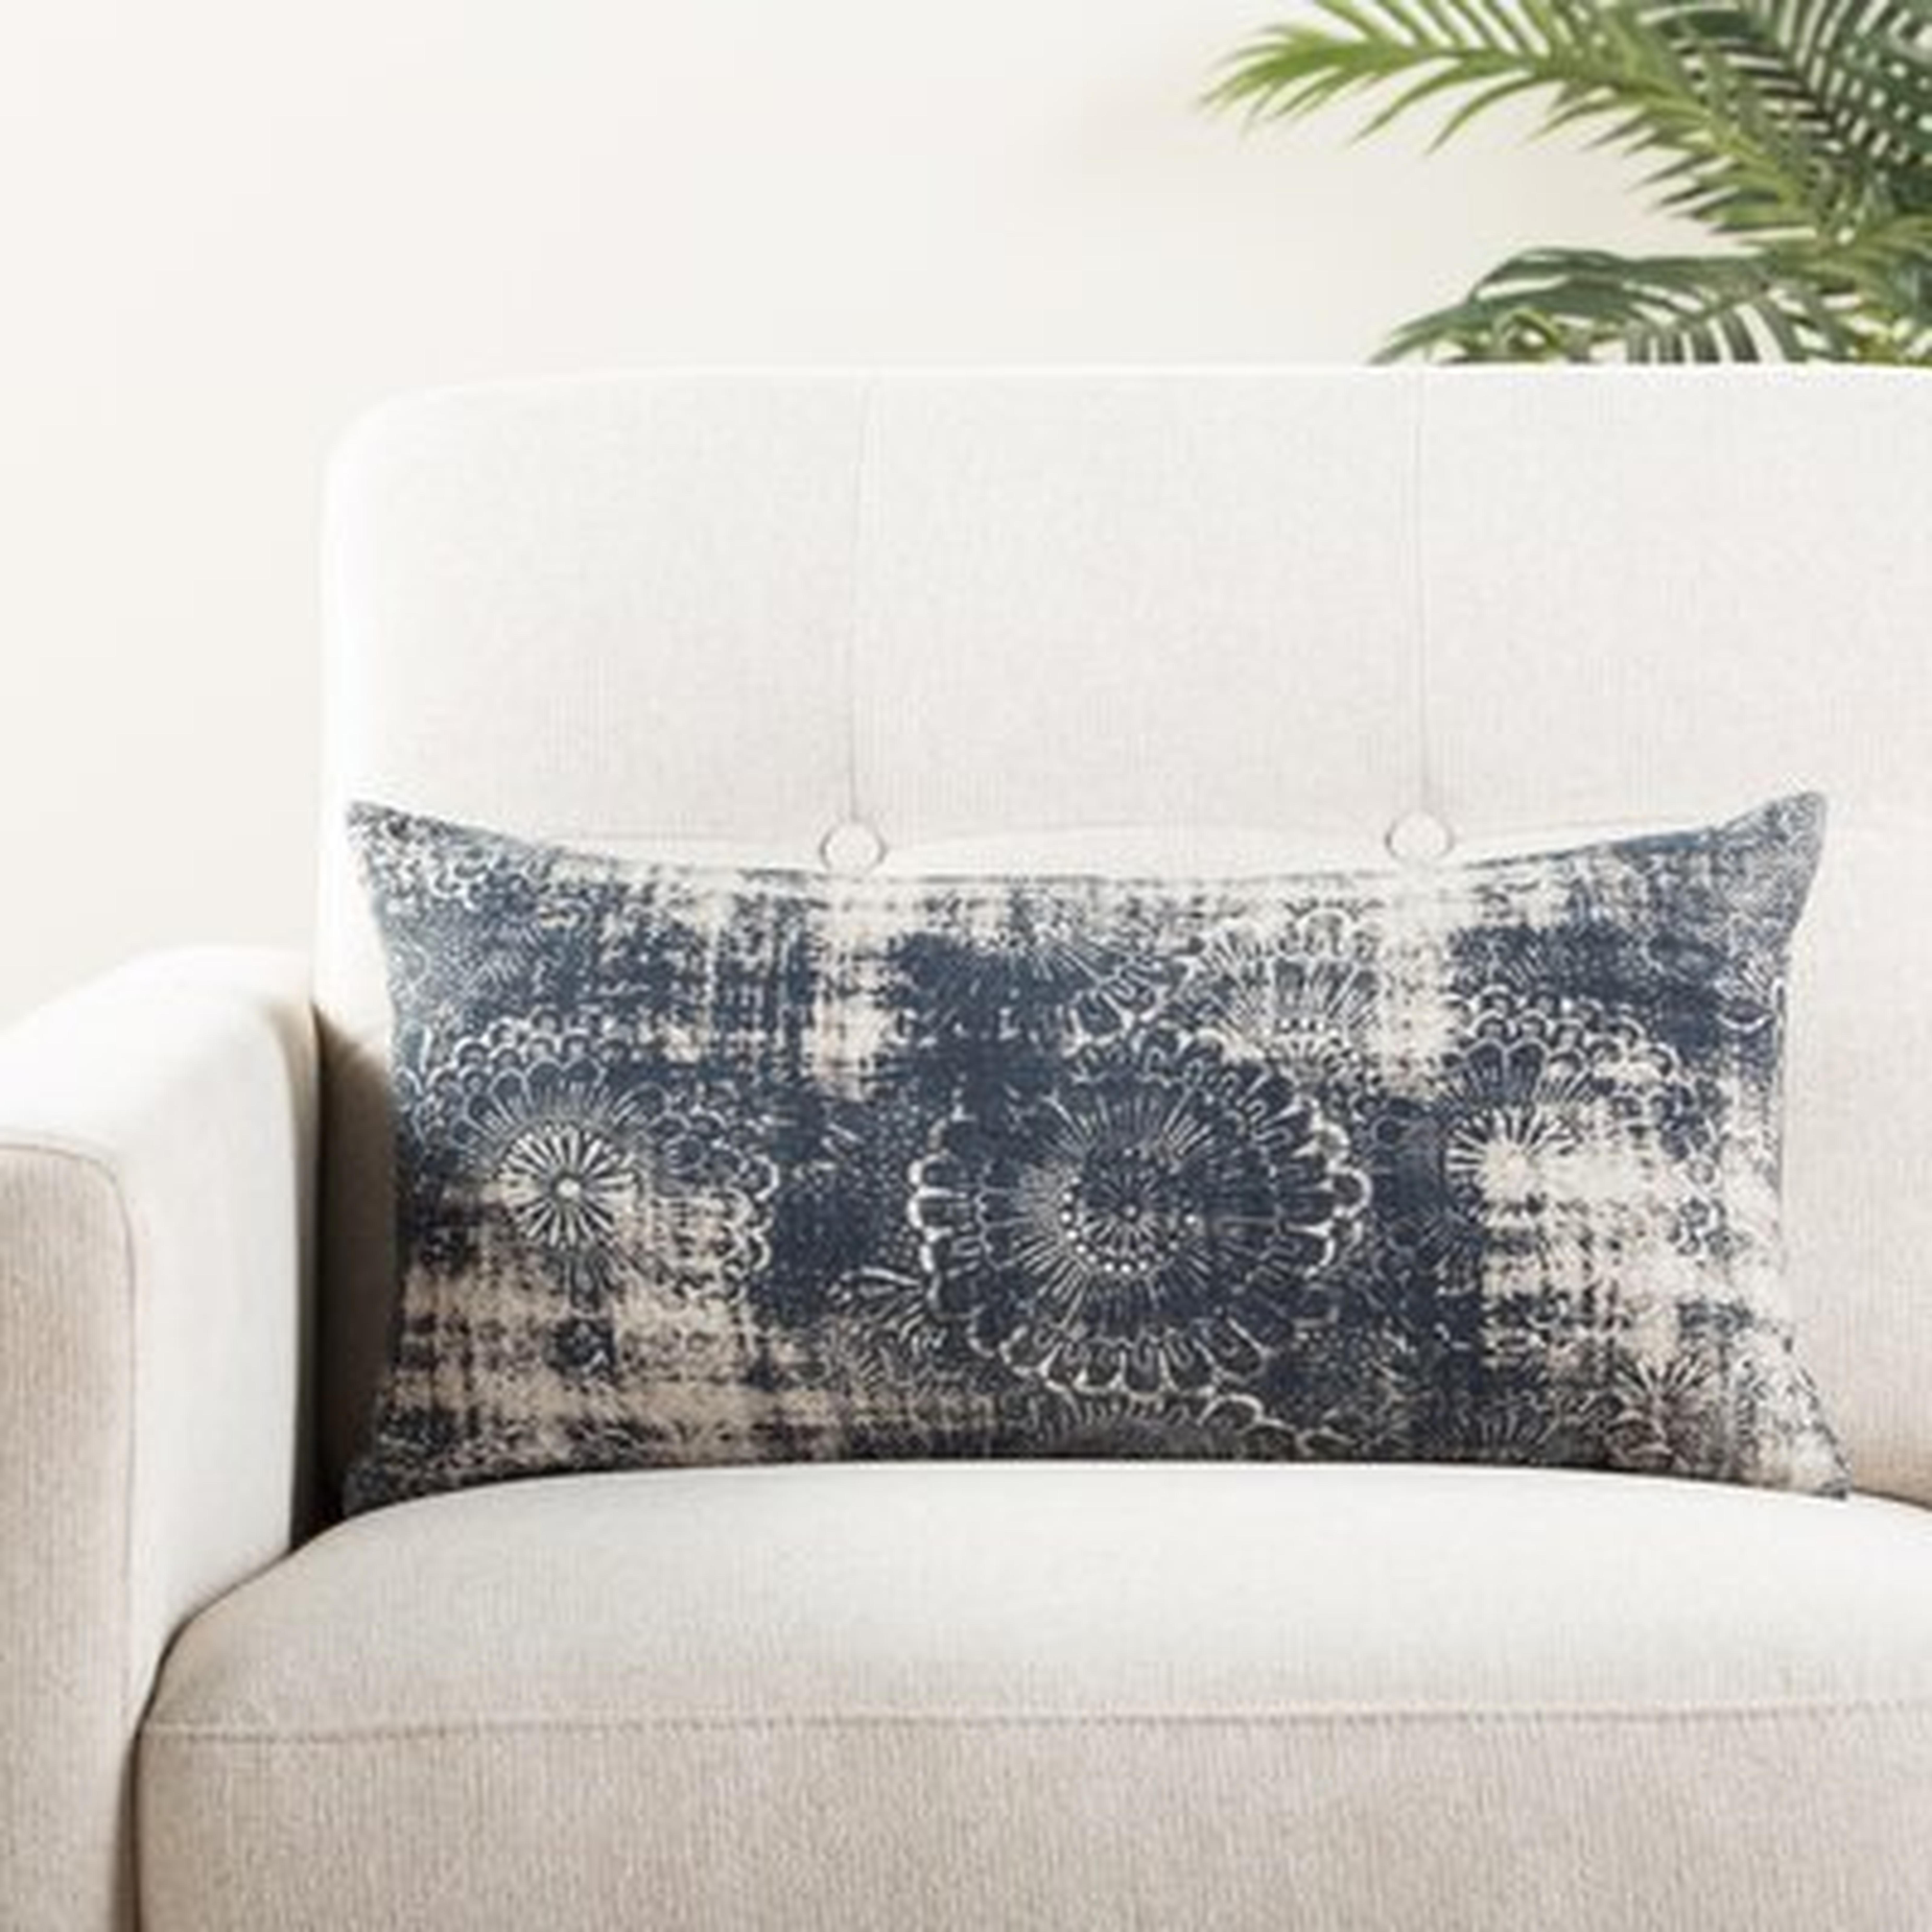 Taulbee Cotton Damask Lumbar Pillow Cover - Wayfair